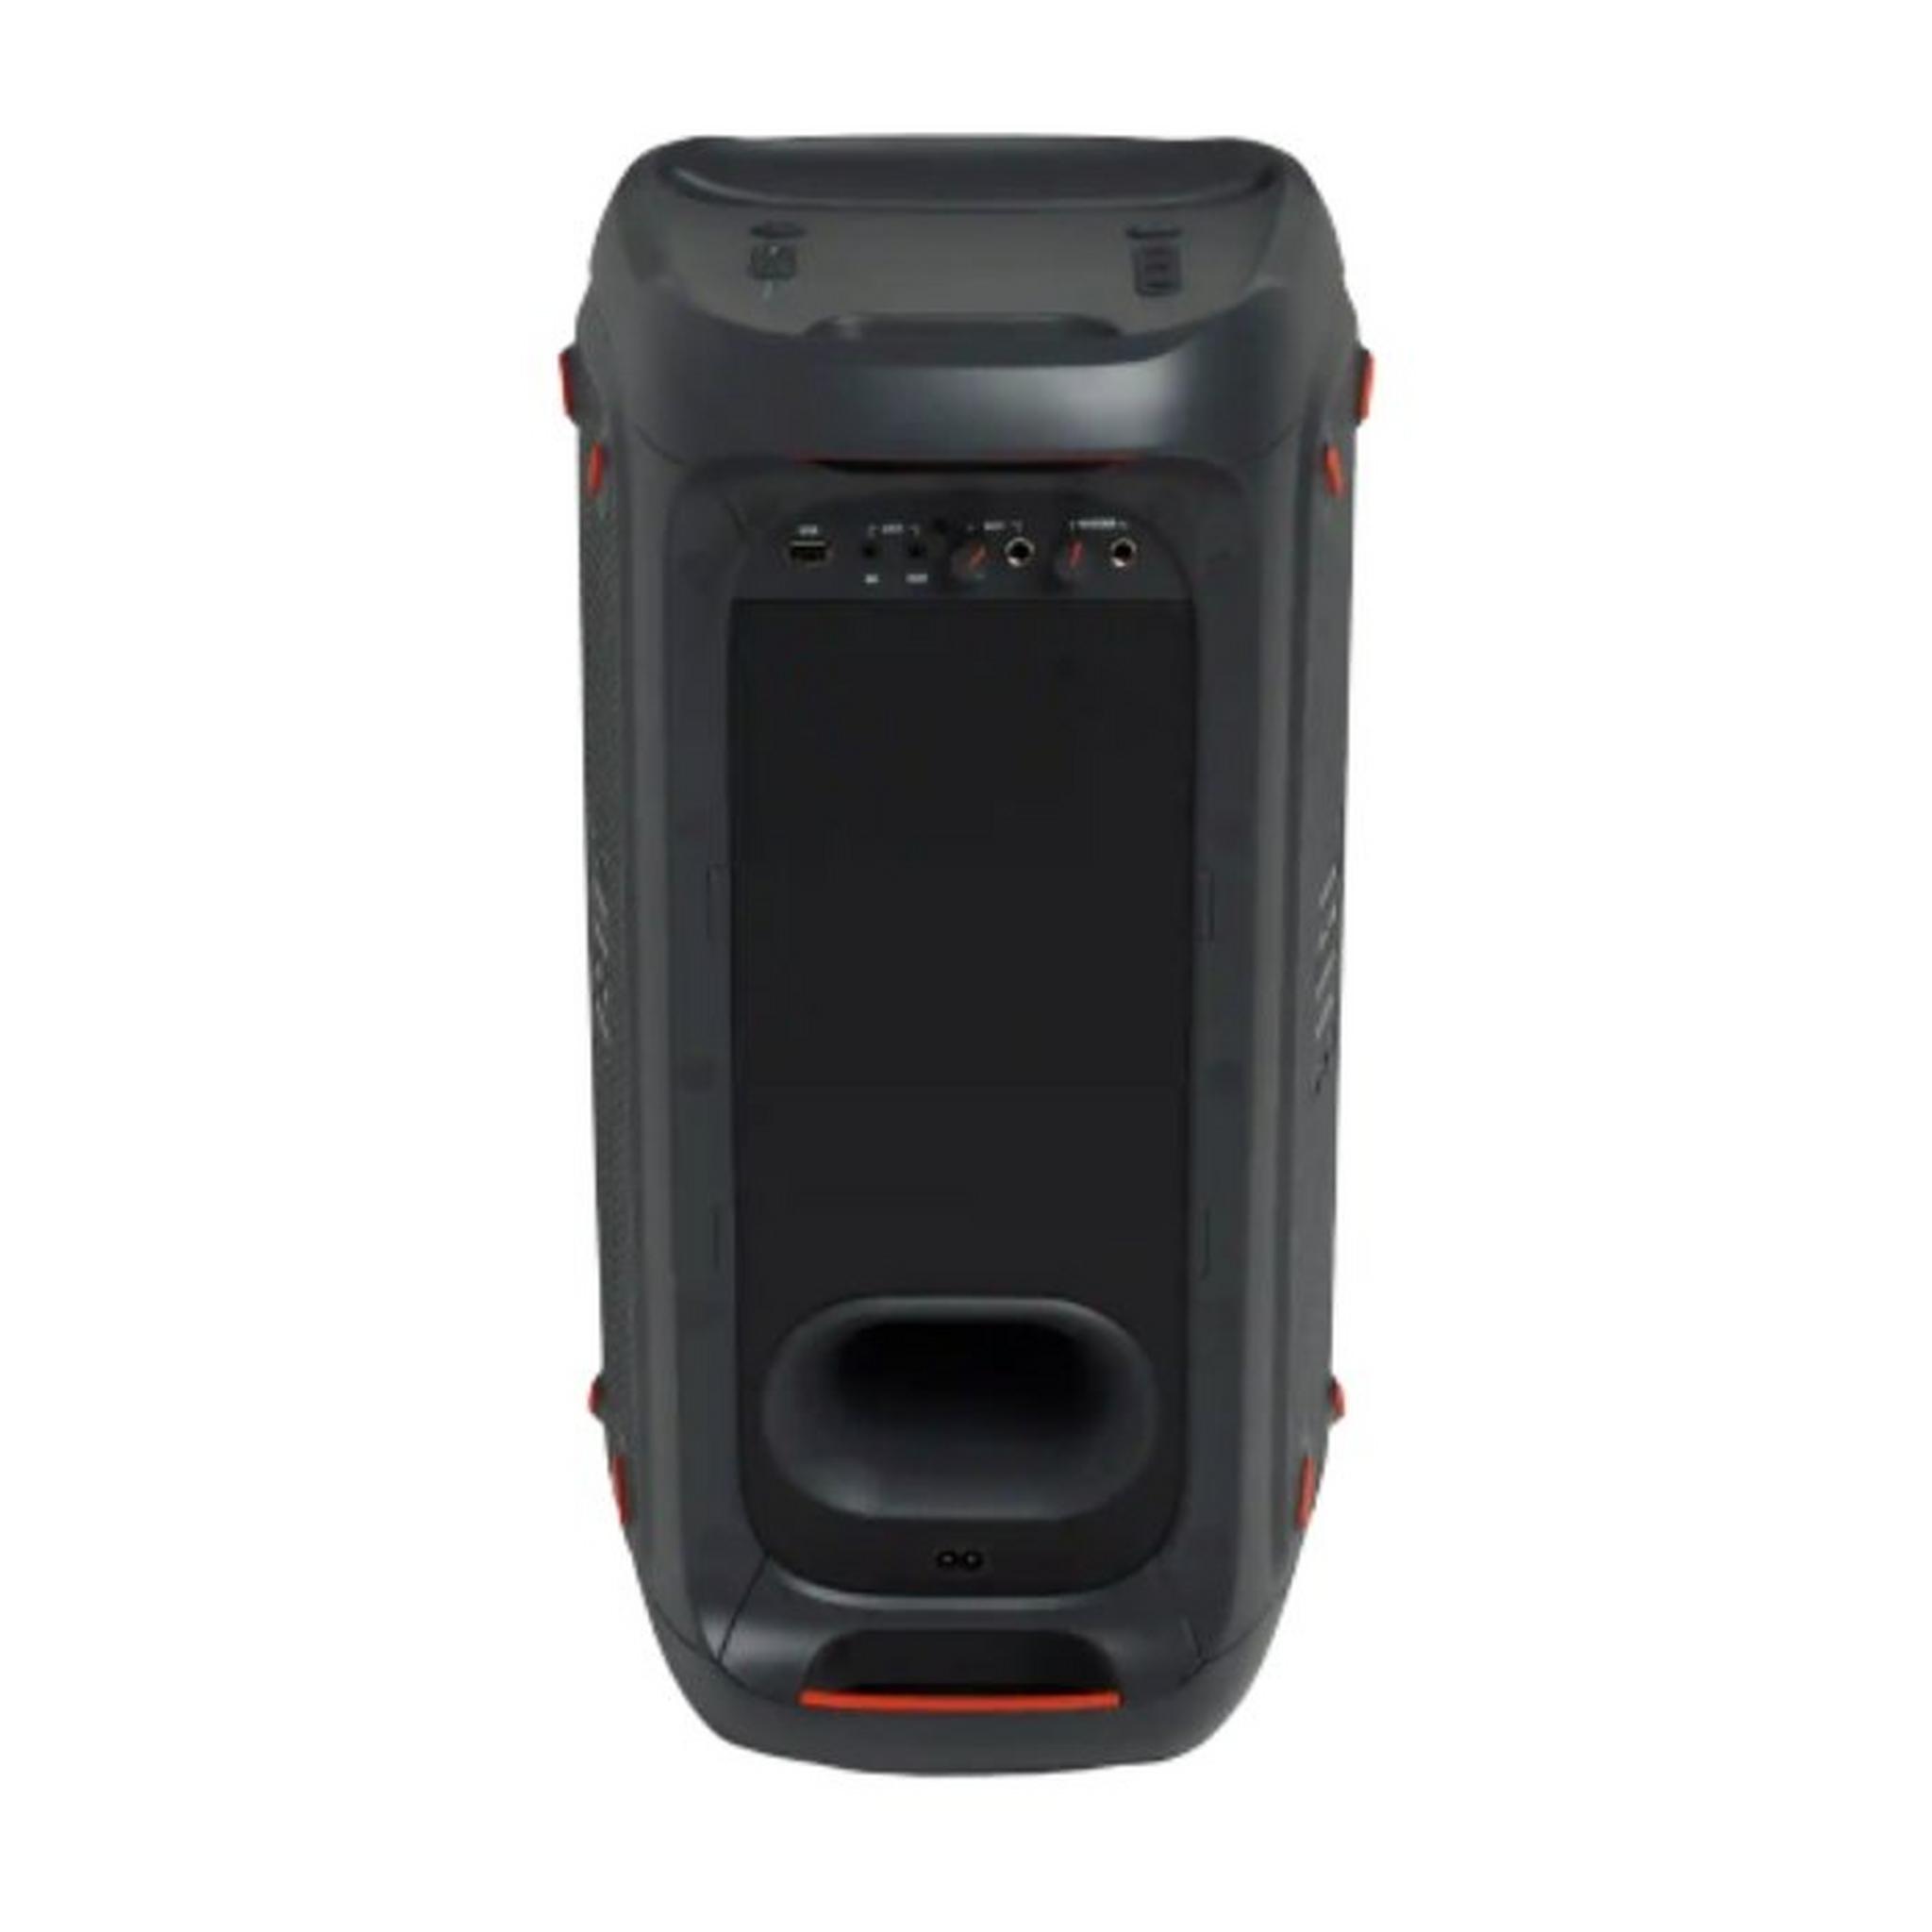 JBL PartyBox 100 Wireless Speaker - Black